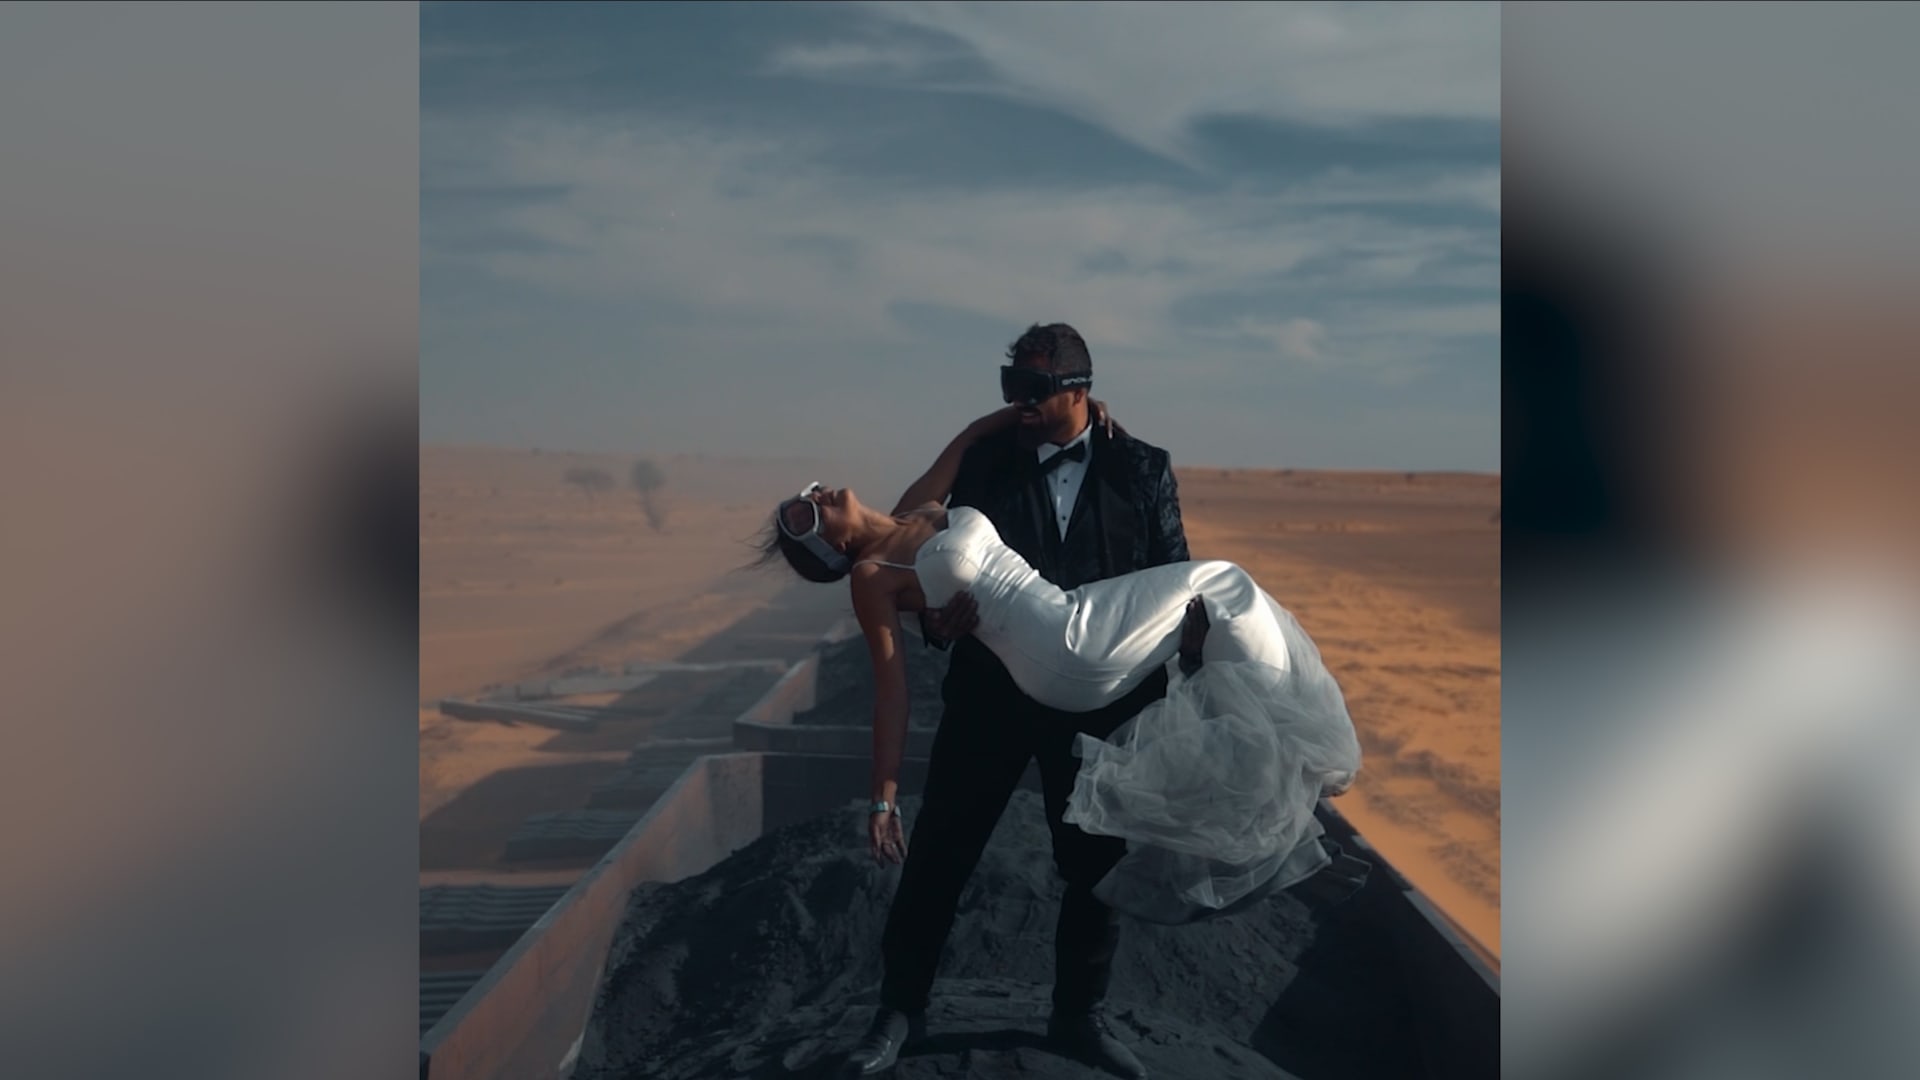 "رحلة العمر".. ثنائي يقوم بجلسة تصوير شهر العسل فوق قطار يشق الصحراء بموريتانيا